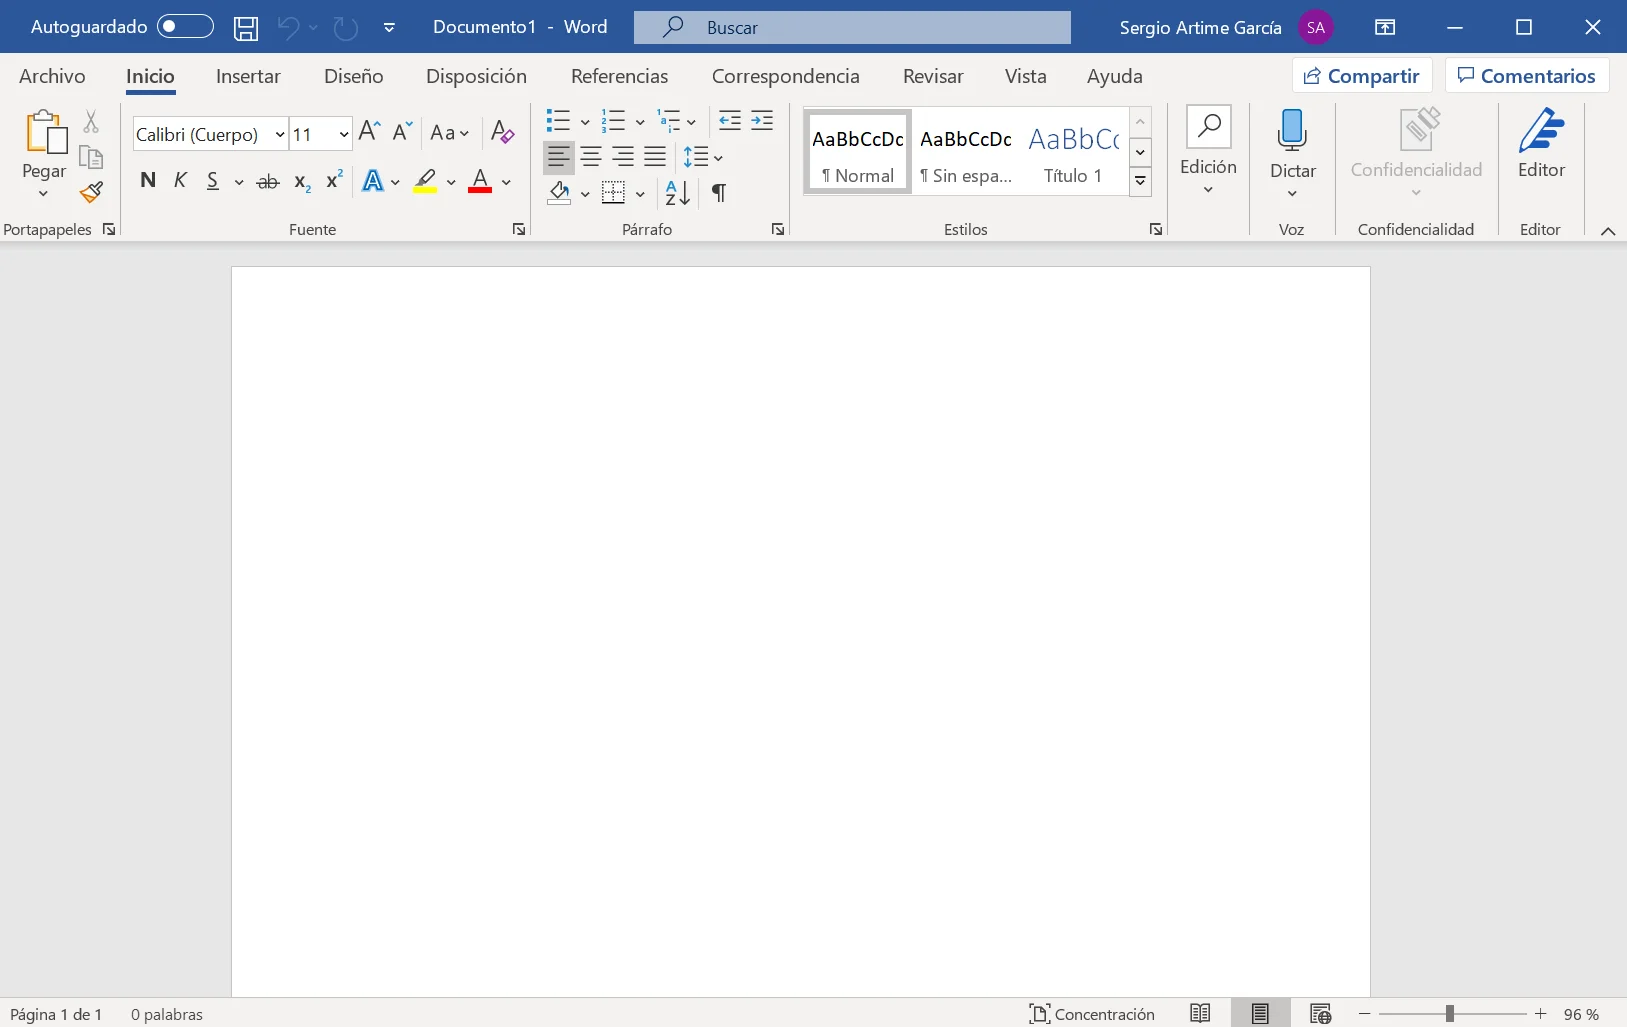 Microsoft presenta Office 2021: características, precio y disponibilidad